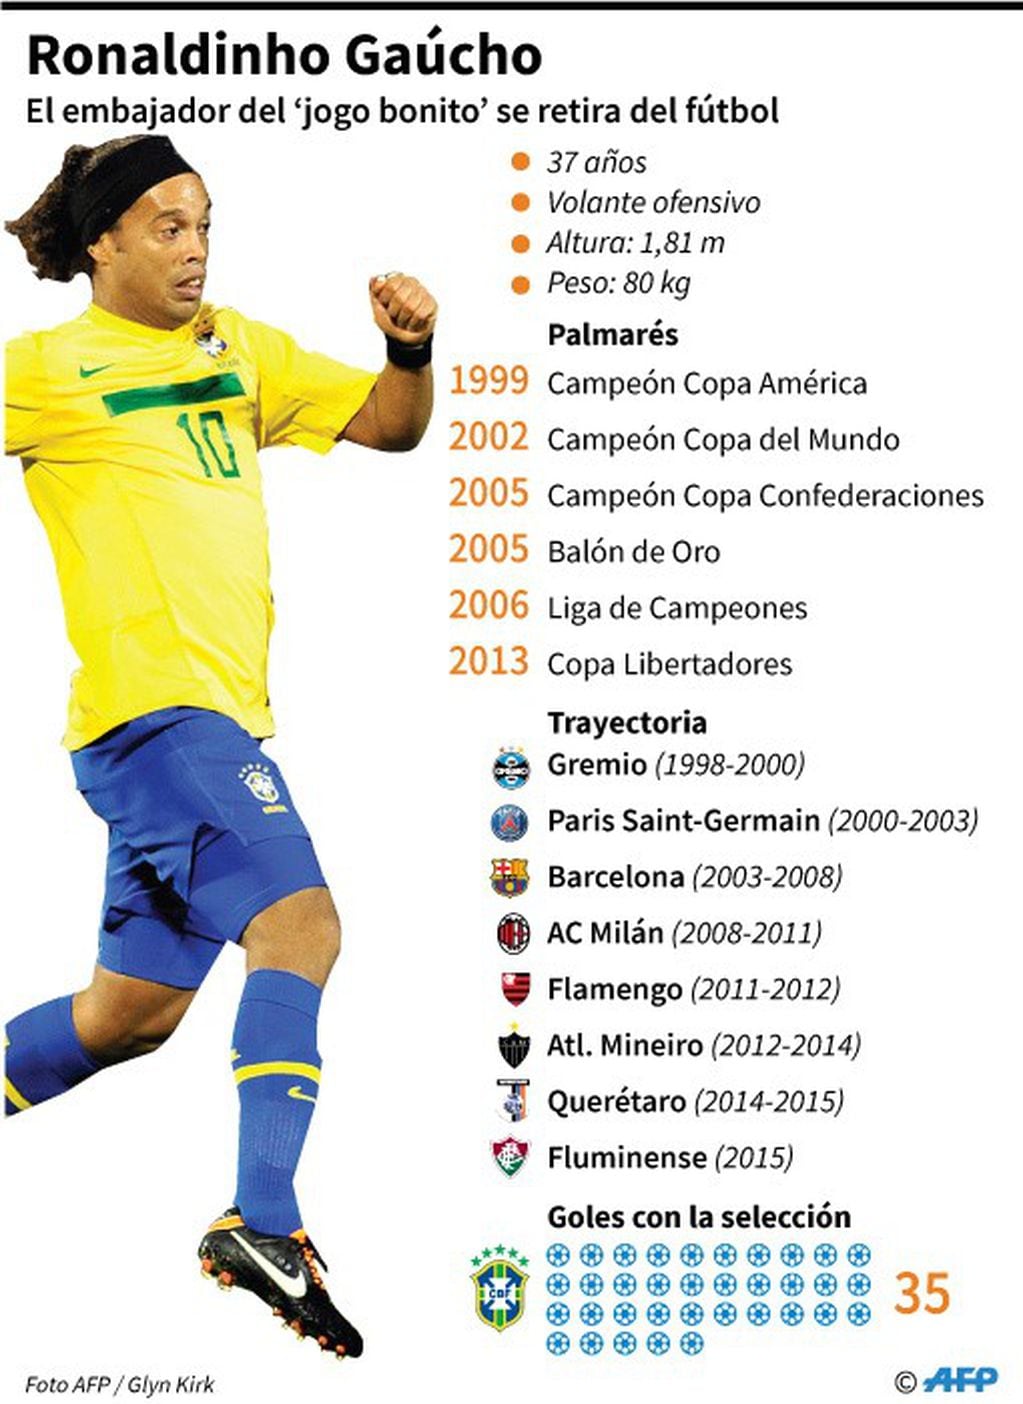 Ficha de Ronaldinho Gaúcho, el astro brasileño que anunció su retiro del fútbol - AFP / AFP